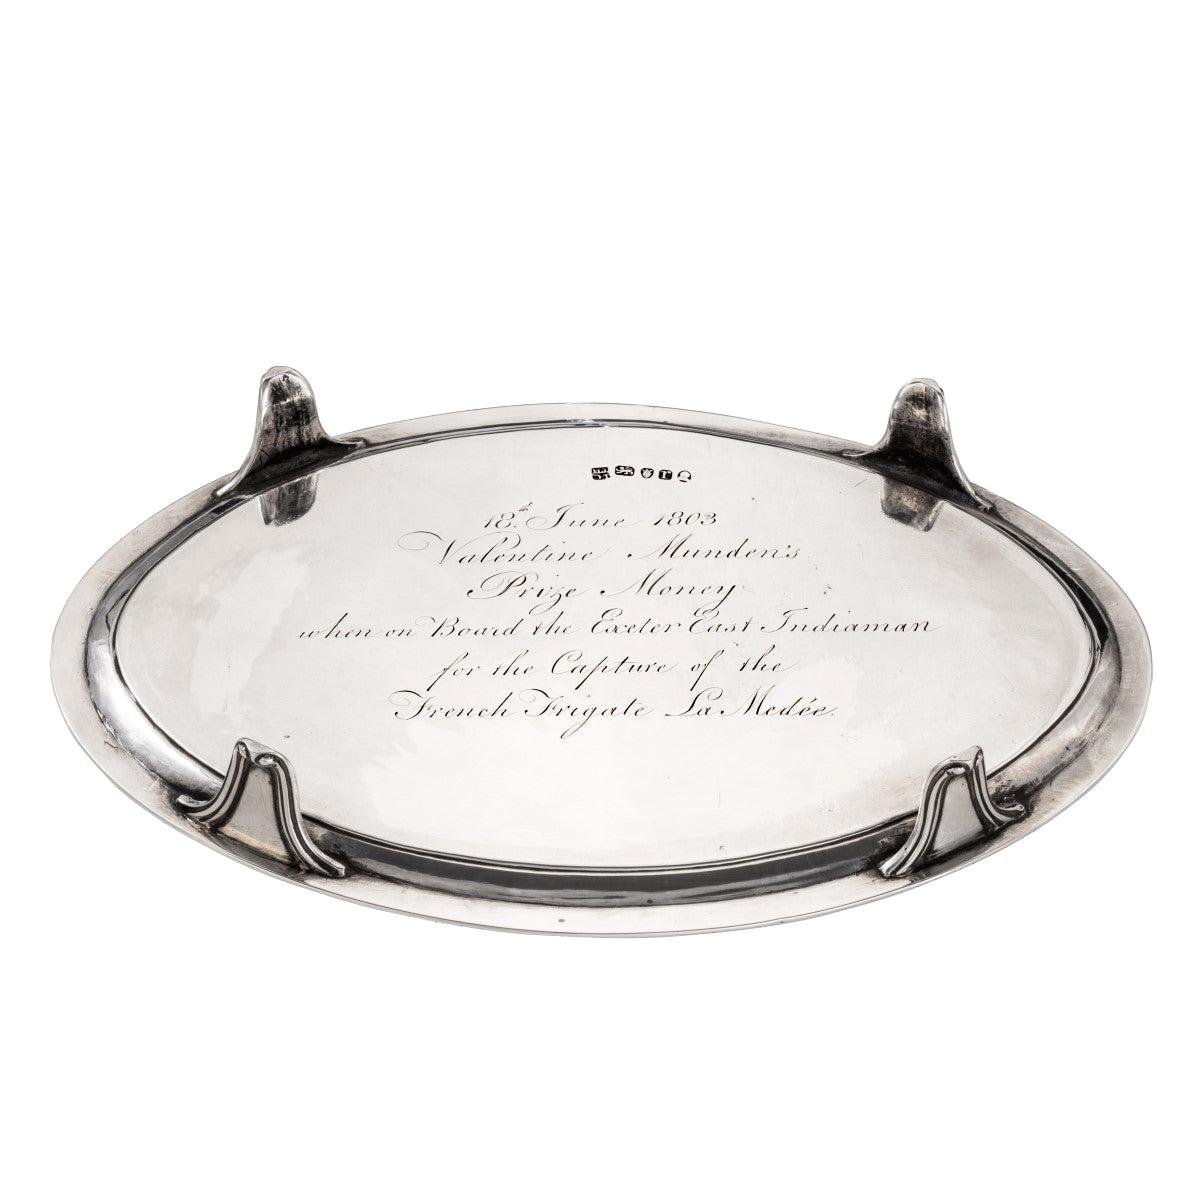 Valentine Munden’s Prize Money Silver Salver, London, 1792